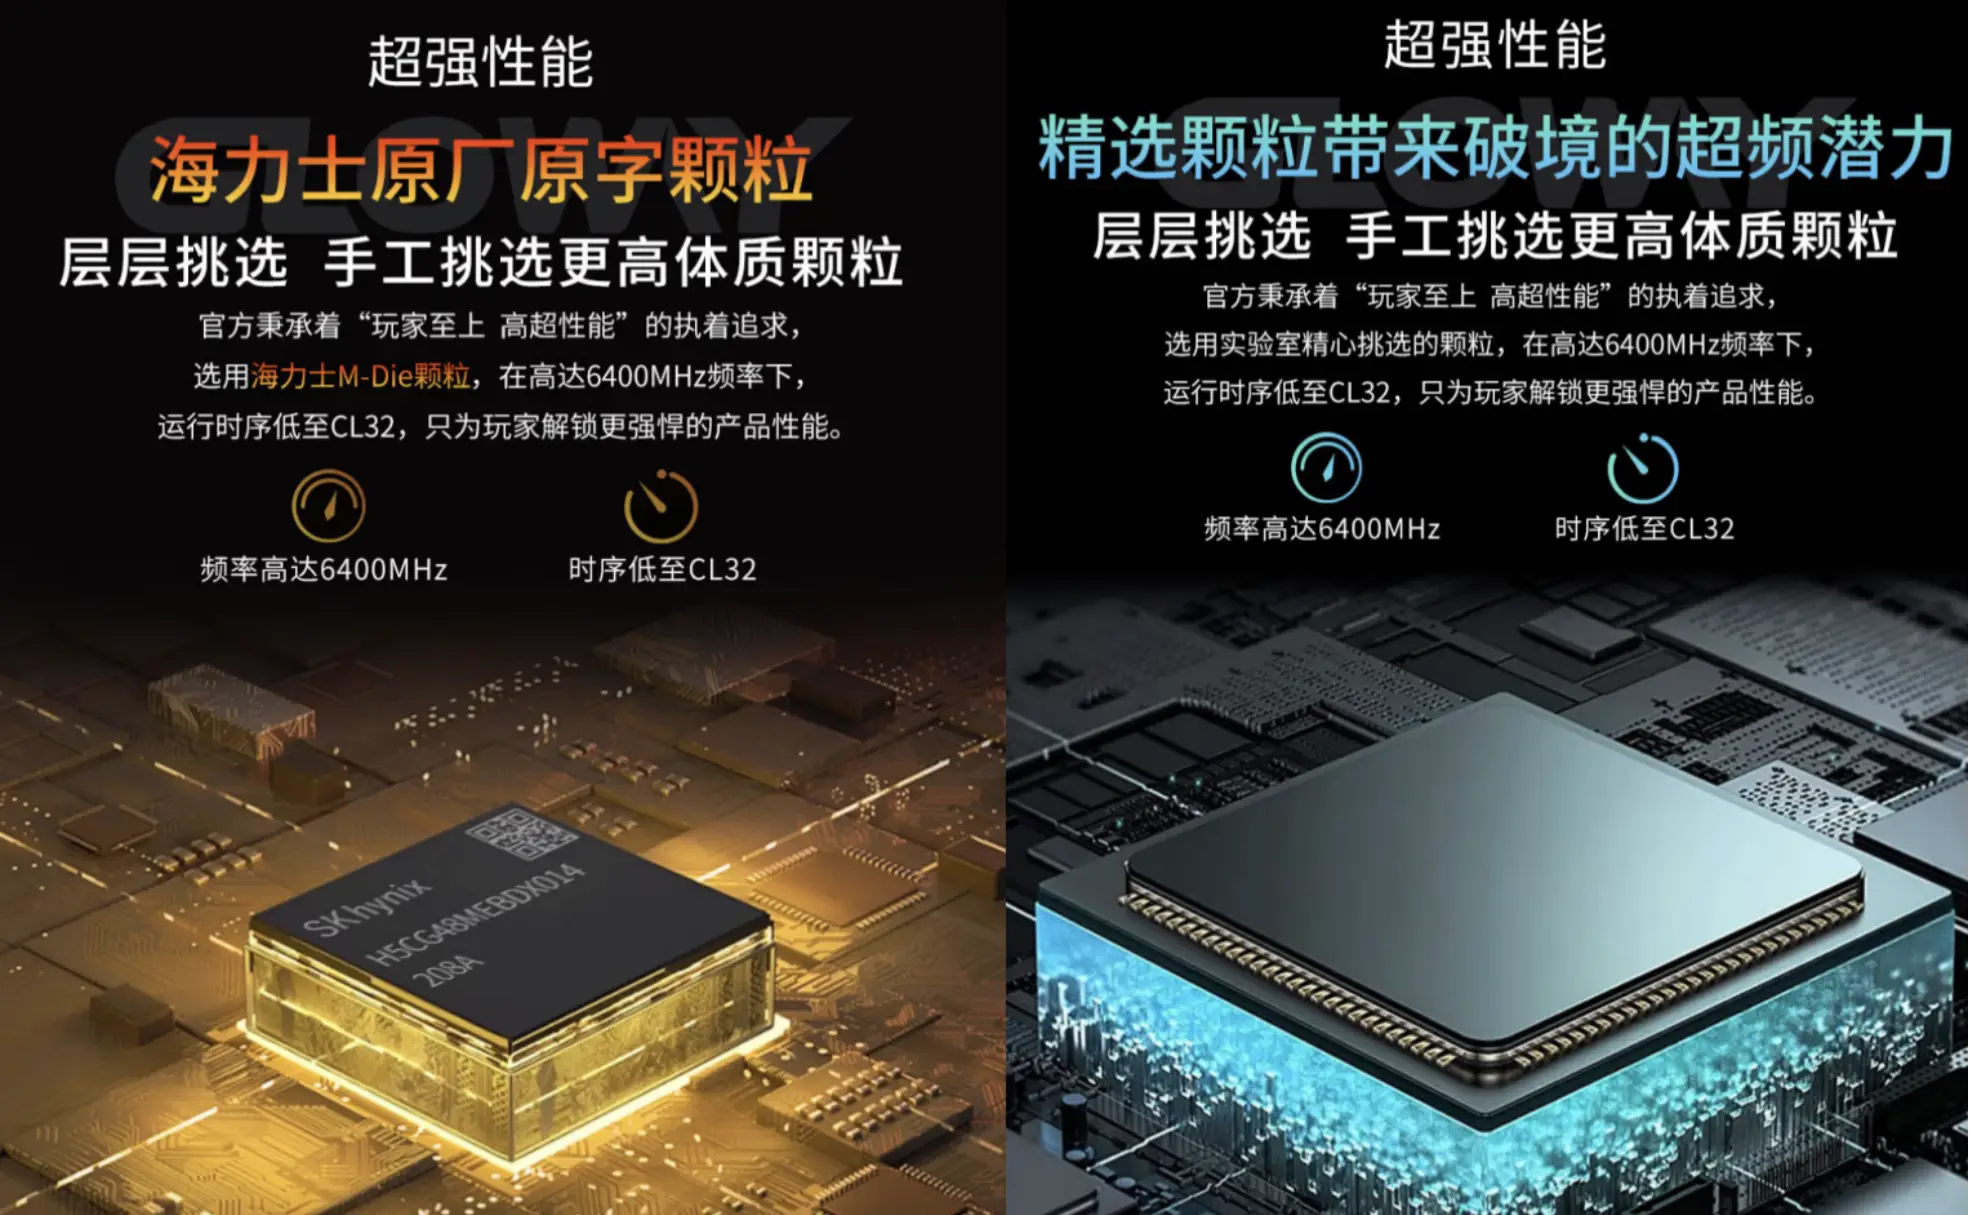 新品 DDR4 34GB 内存测试报告：性能、外观与布置全解析